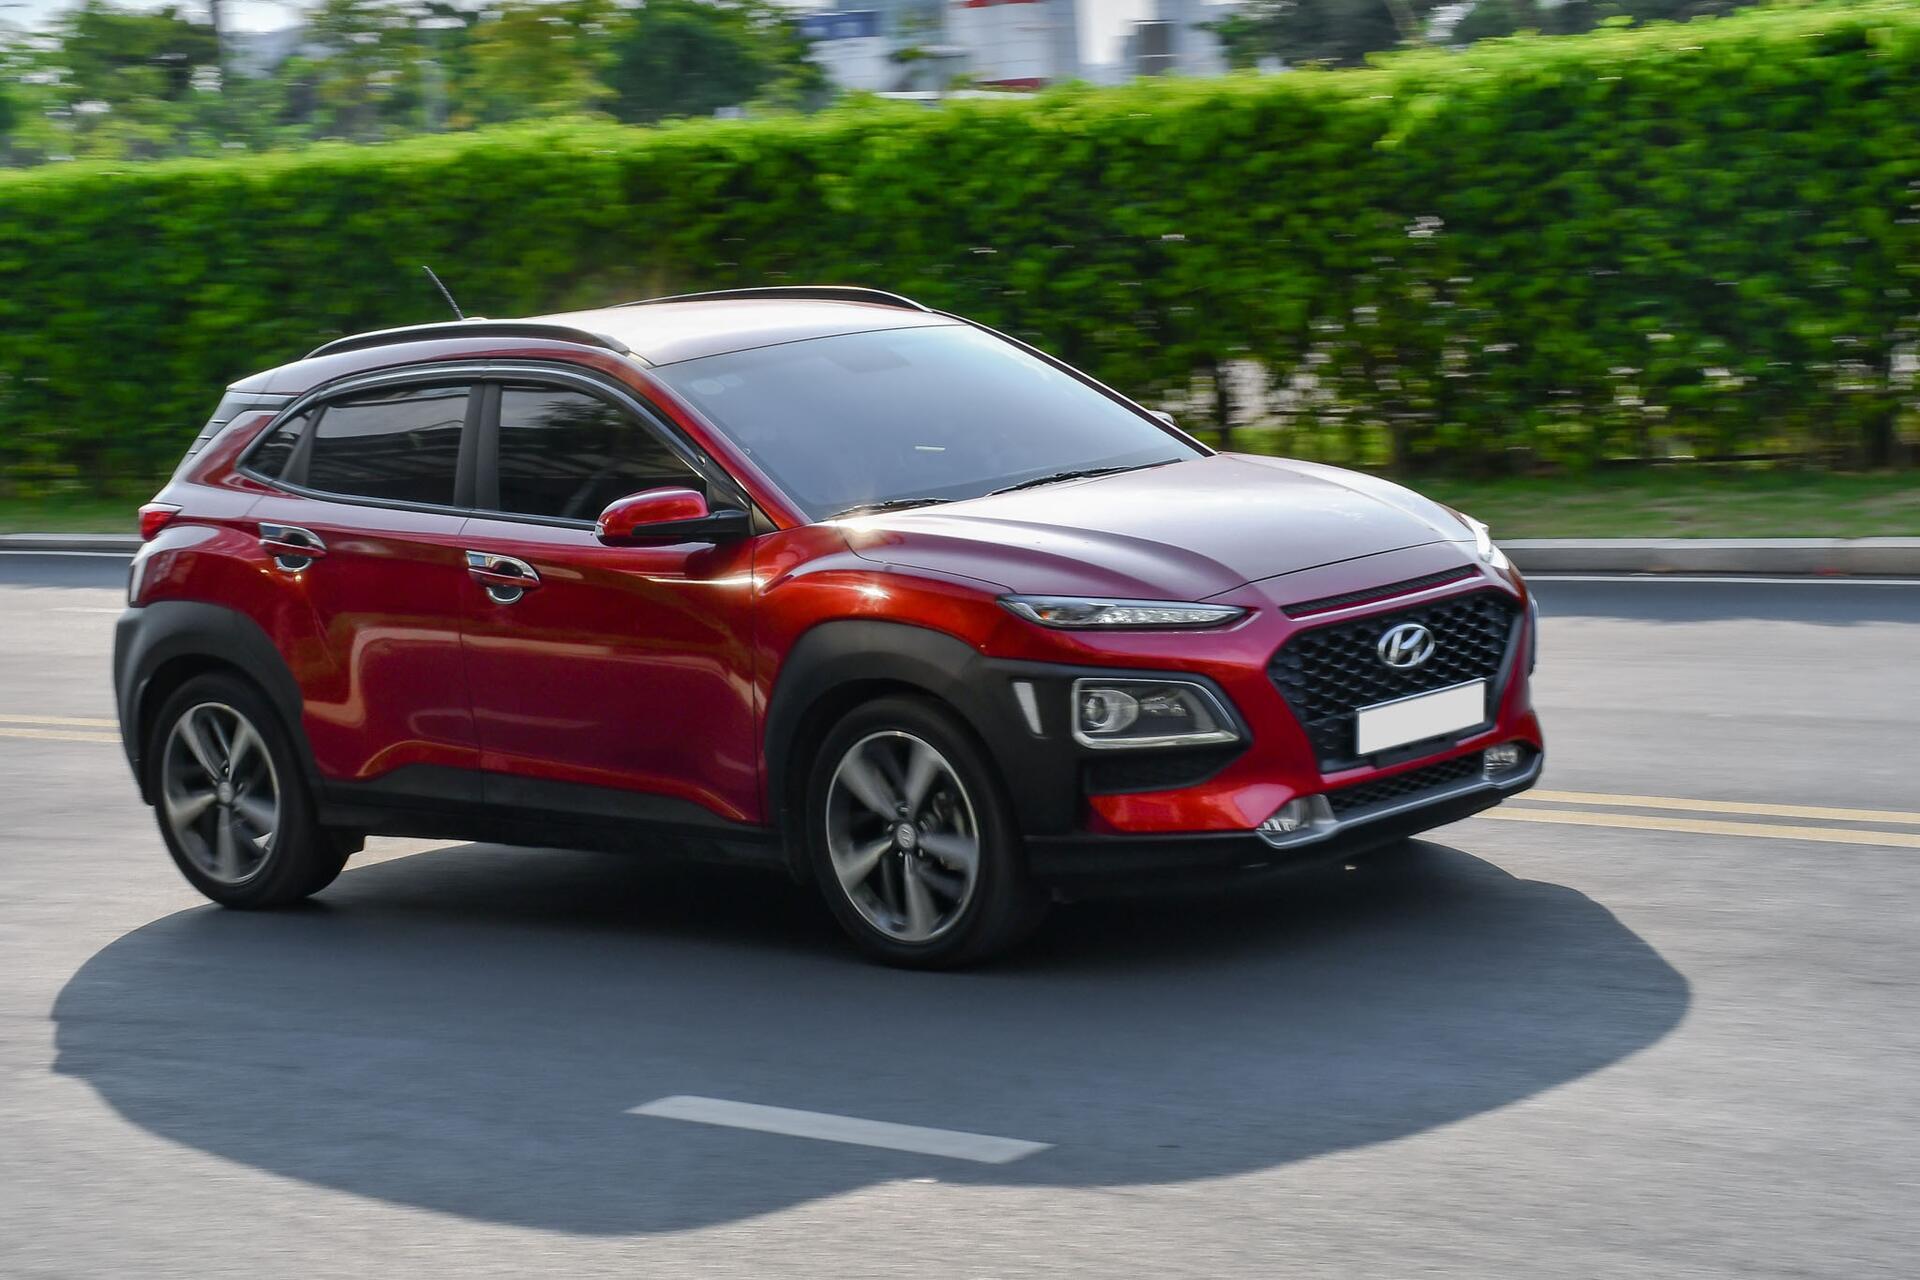 Hyundai Kona bán chạy nhất nhóm SUV hạng B trong năm 2020